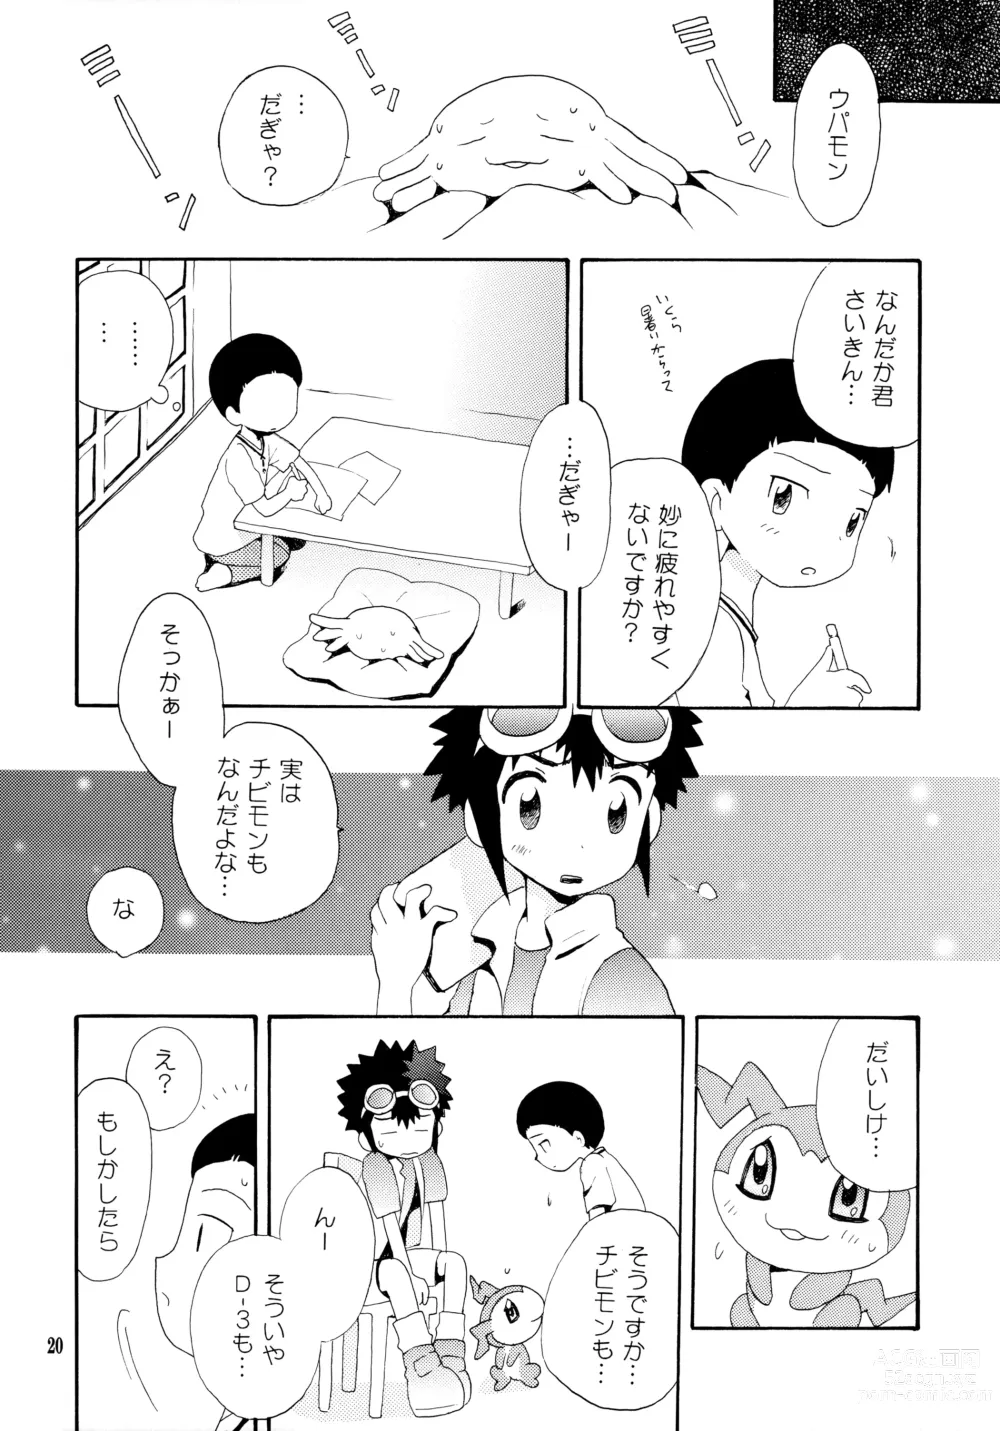 Page 19 of doujinshi Yorokobi mo Kanashimi mo Ikutoshitsuki